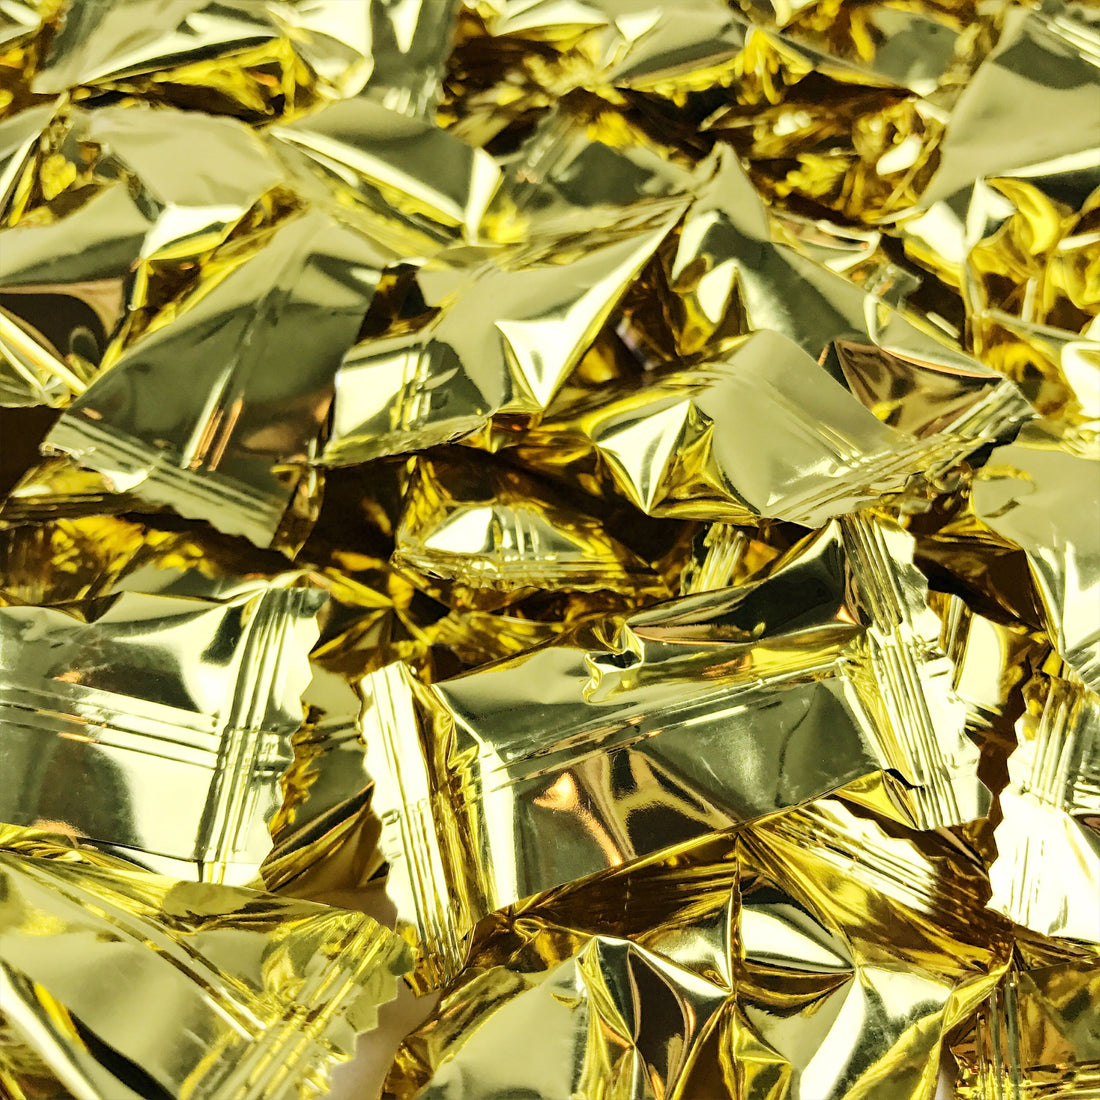 Gold Buttermints - 13 oz Bag